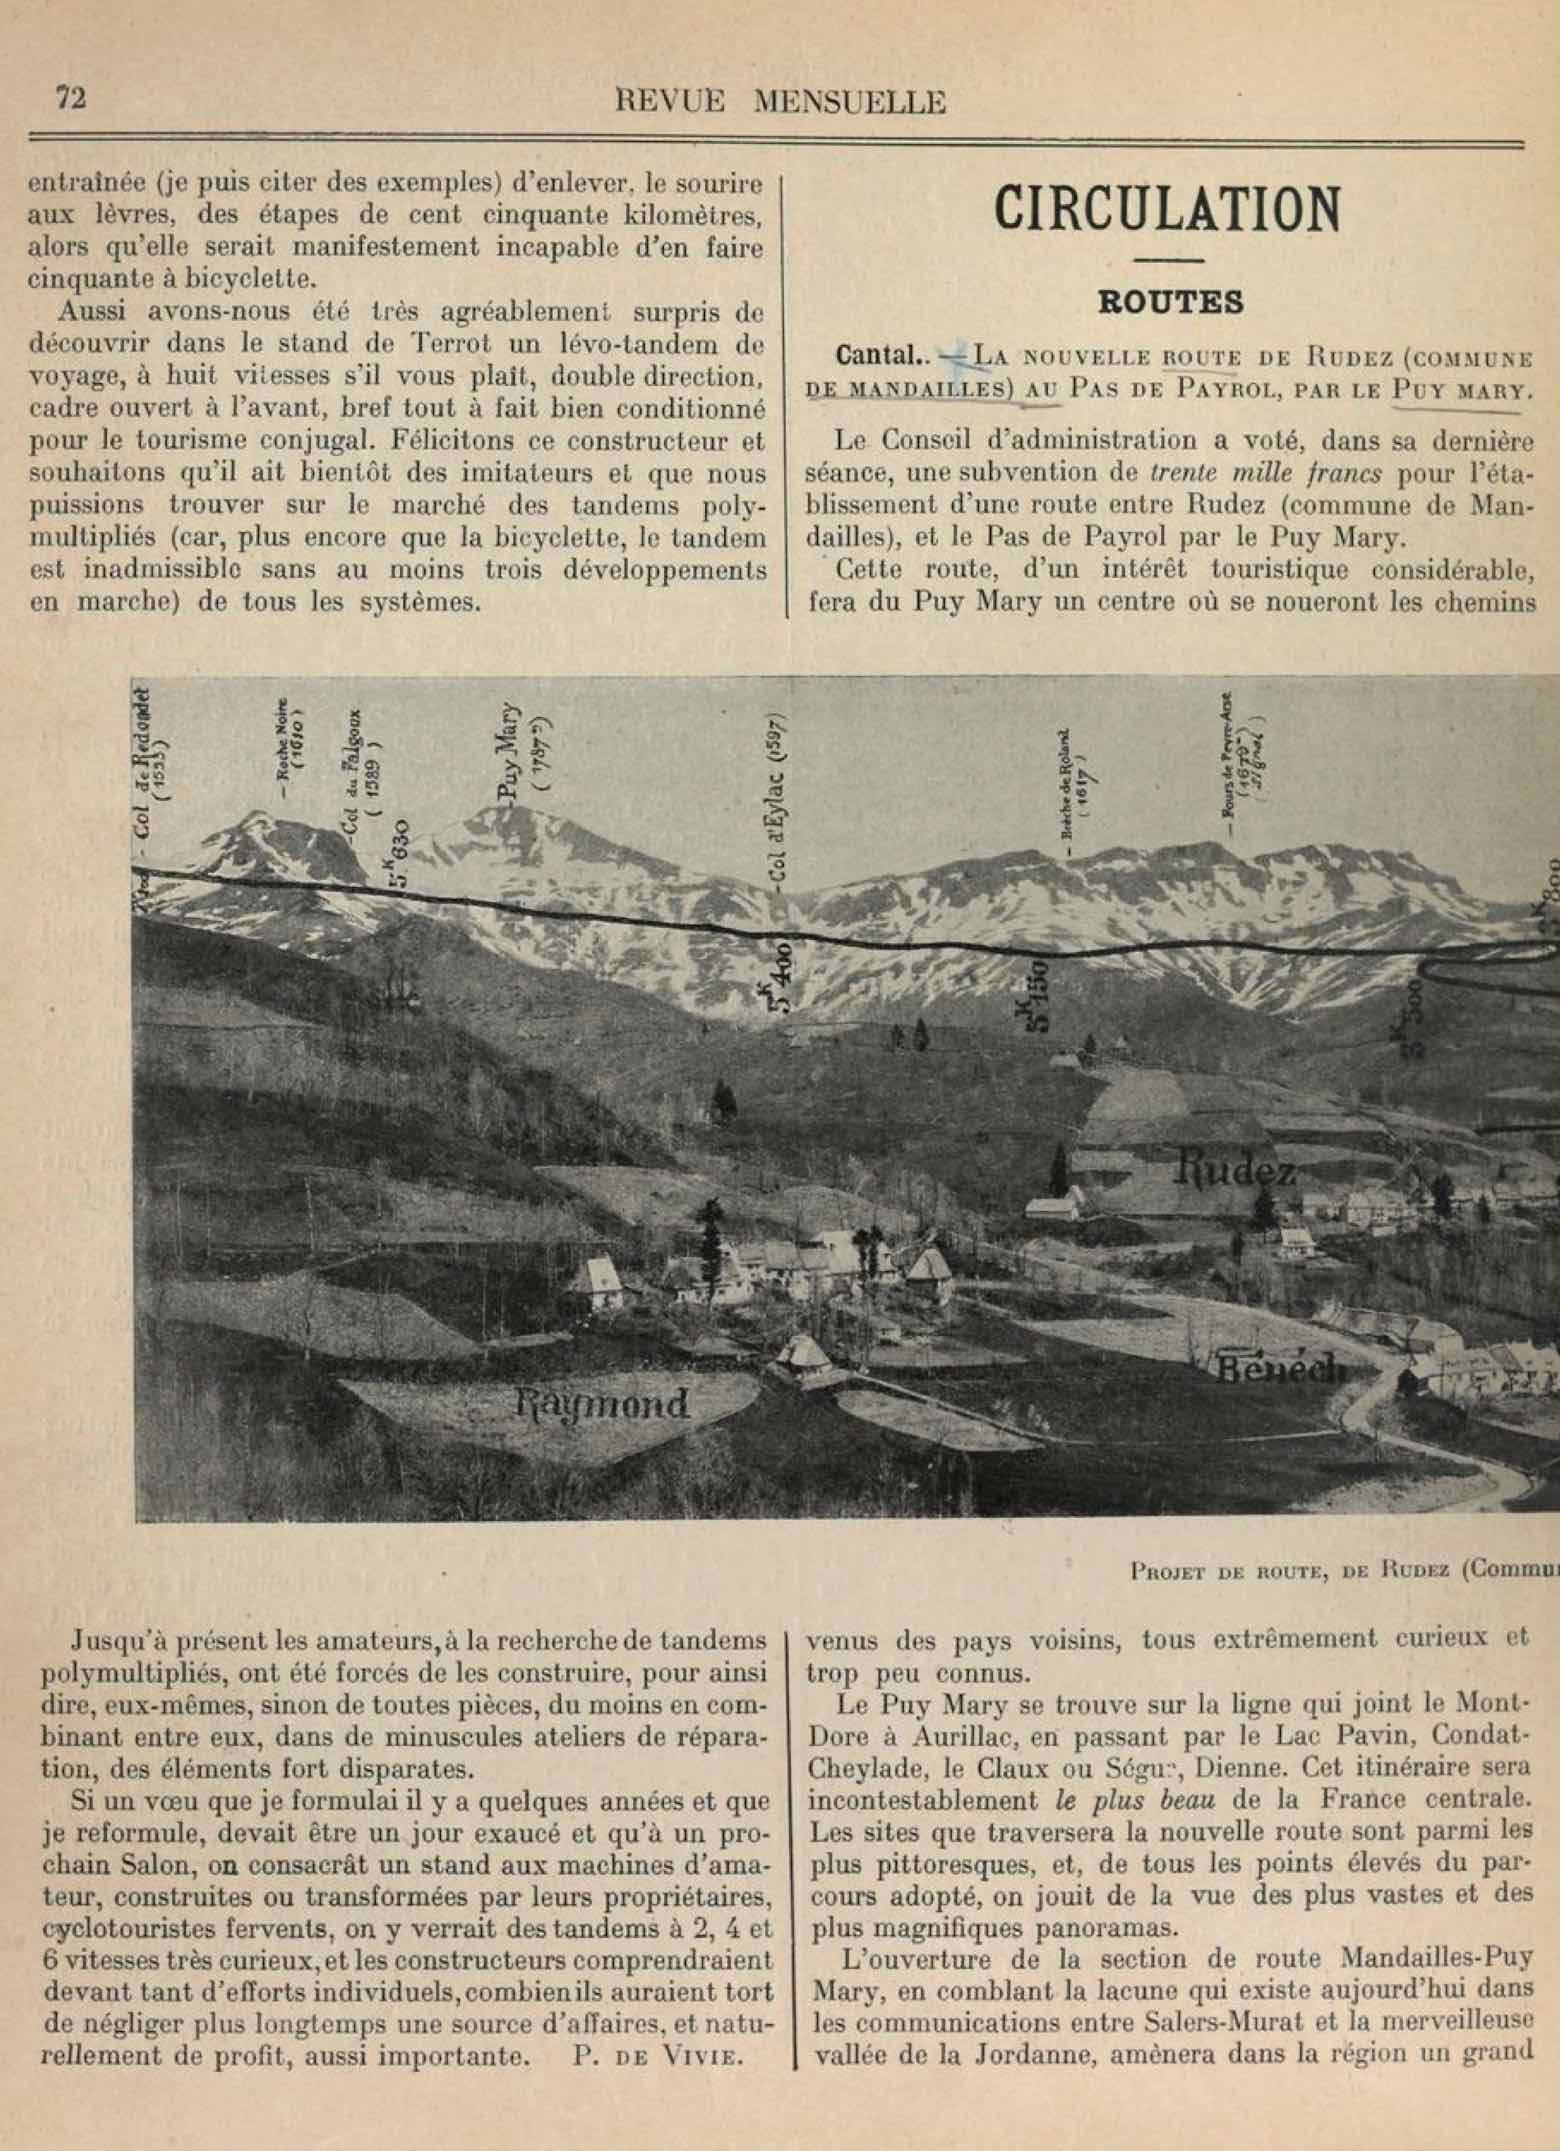 T.C.F. Revue Mensuelle February 1909 - La Bicyclette au Salon (part II) scan 3 main image